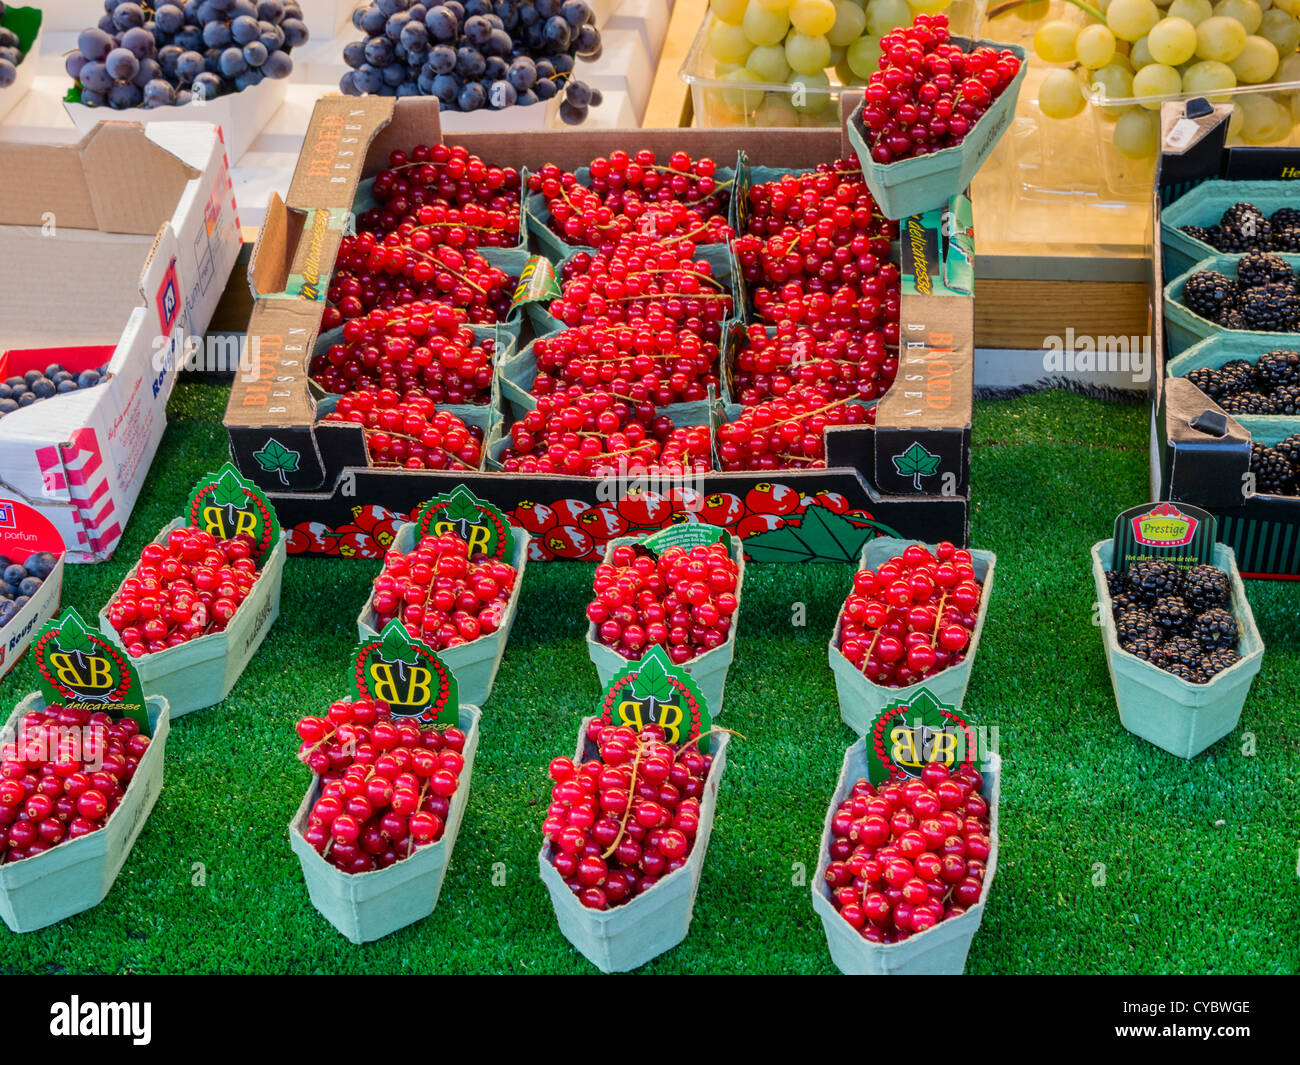 Rote Johannisbeeren in einen Markt für Obst und Gemüse zu verkaufen. Stockfoto